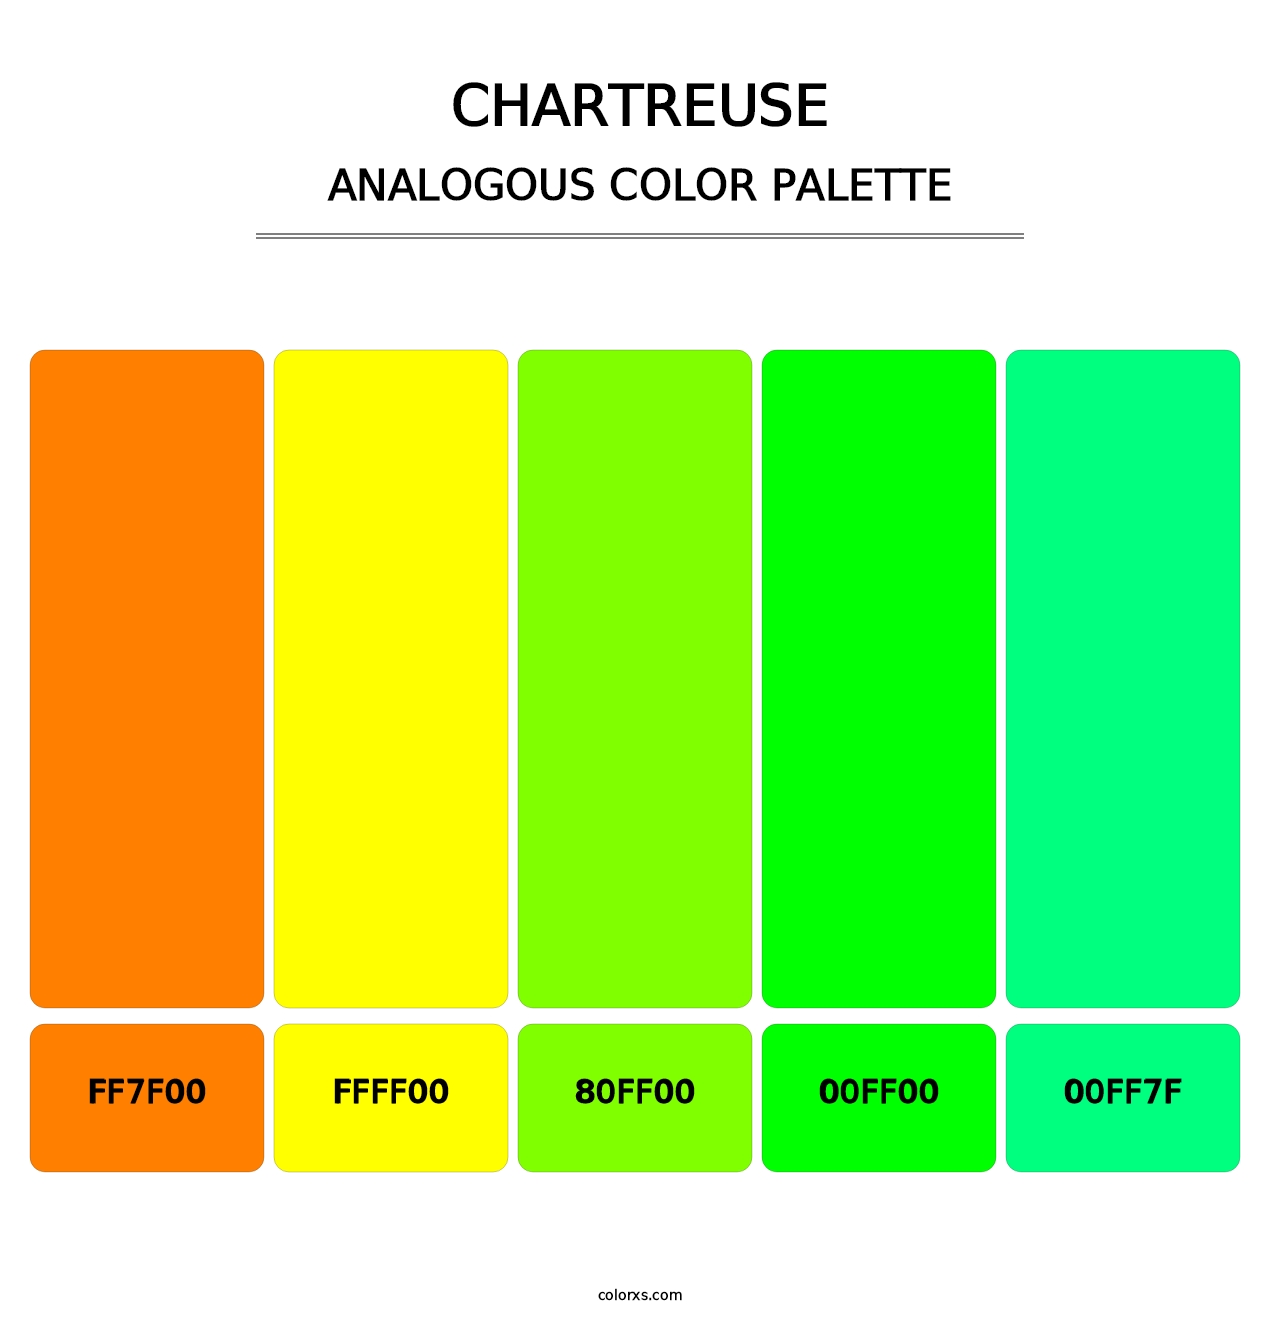 Chartreuse - Analogous Color Palette